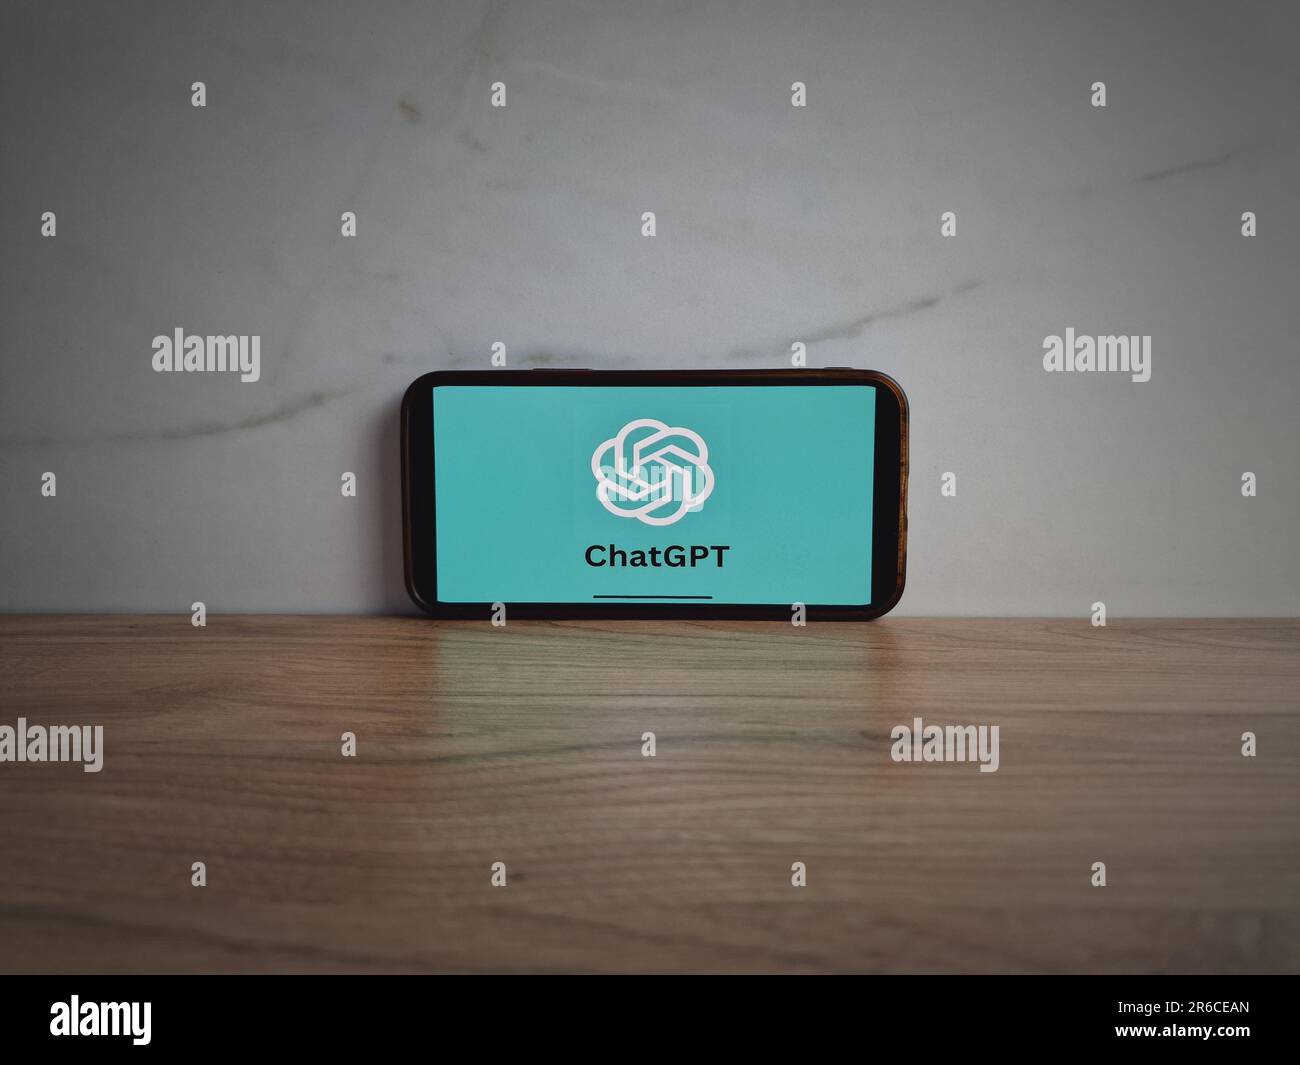 Konskie, Polen - 08. Juni 2023: ChatGPT-Logo für Chatbot mit künstlicher Intelligenz wird auf dem Bildschirm des Mobiltelefons angezeigt Stockfoto